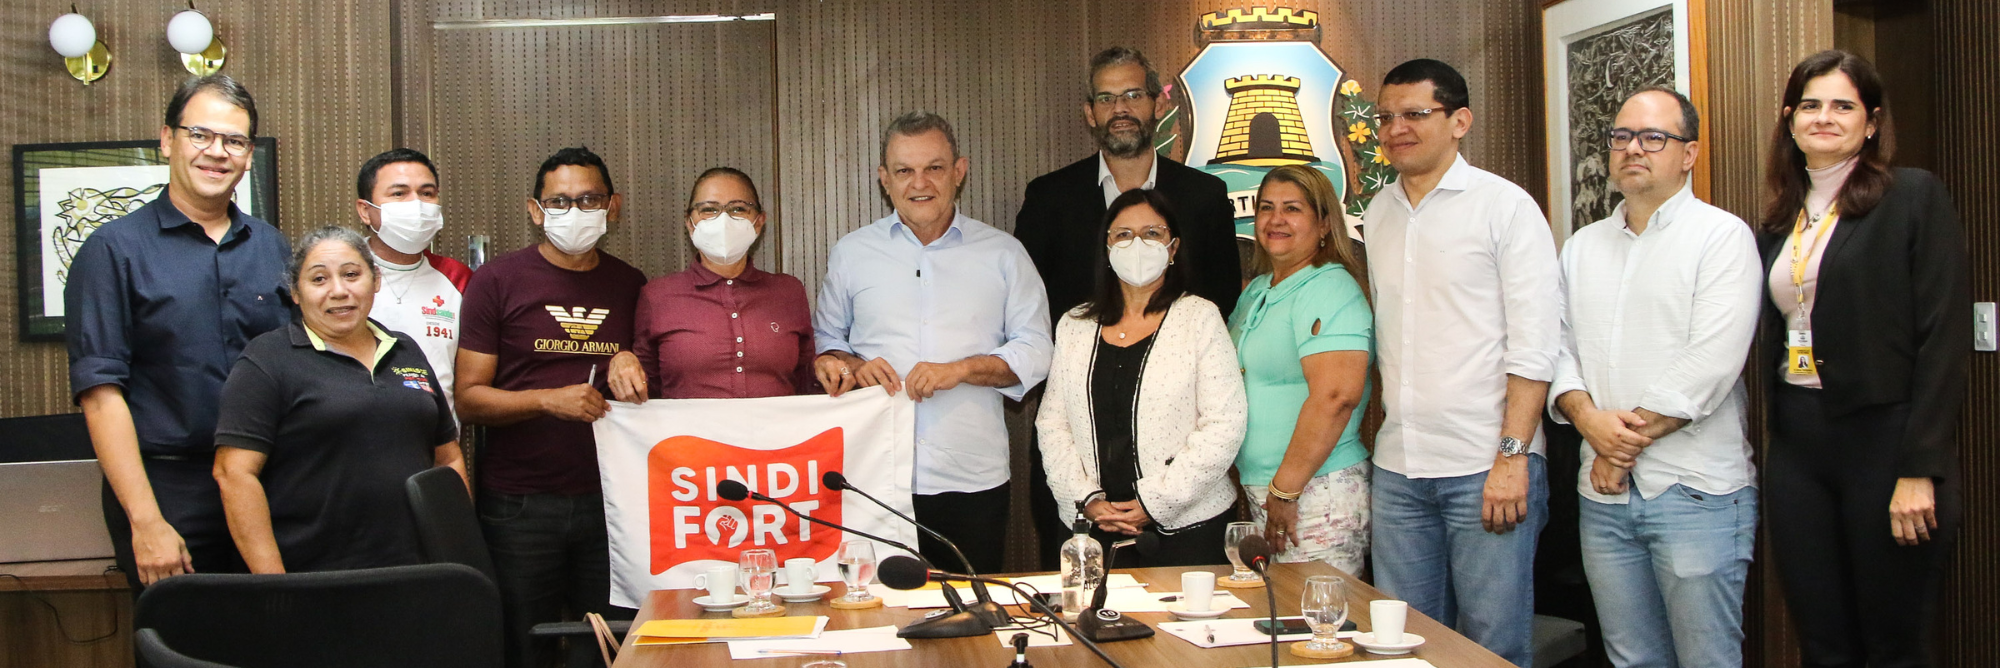 Sarto anuncia novo piso salarial com aumento de 56% a agentes comunitários de saúde e agentes de combate às endemias